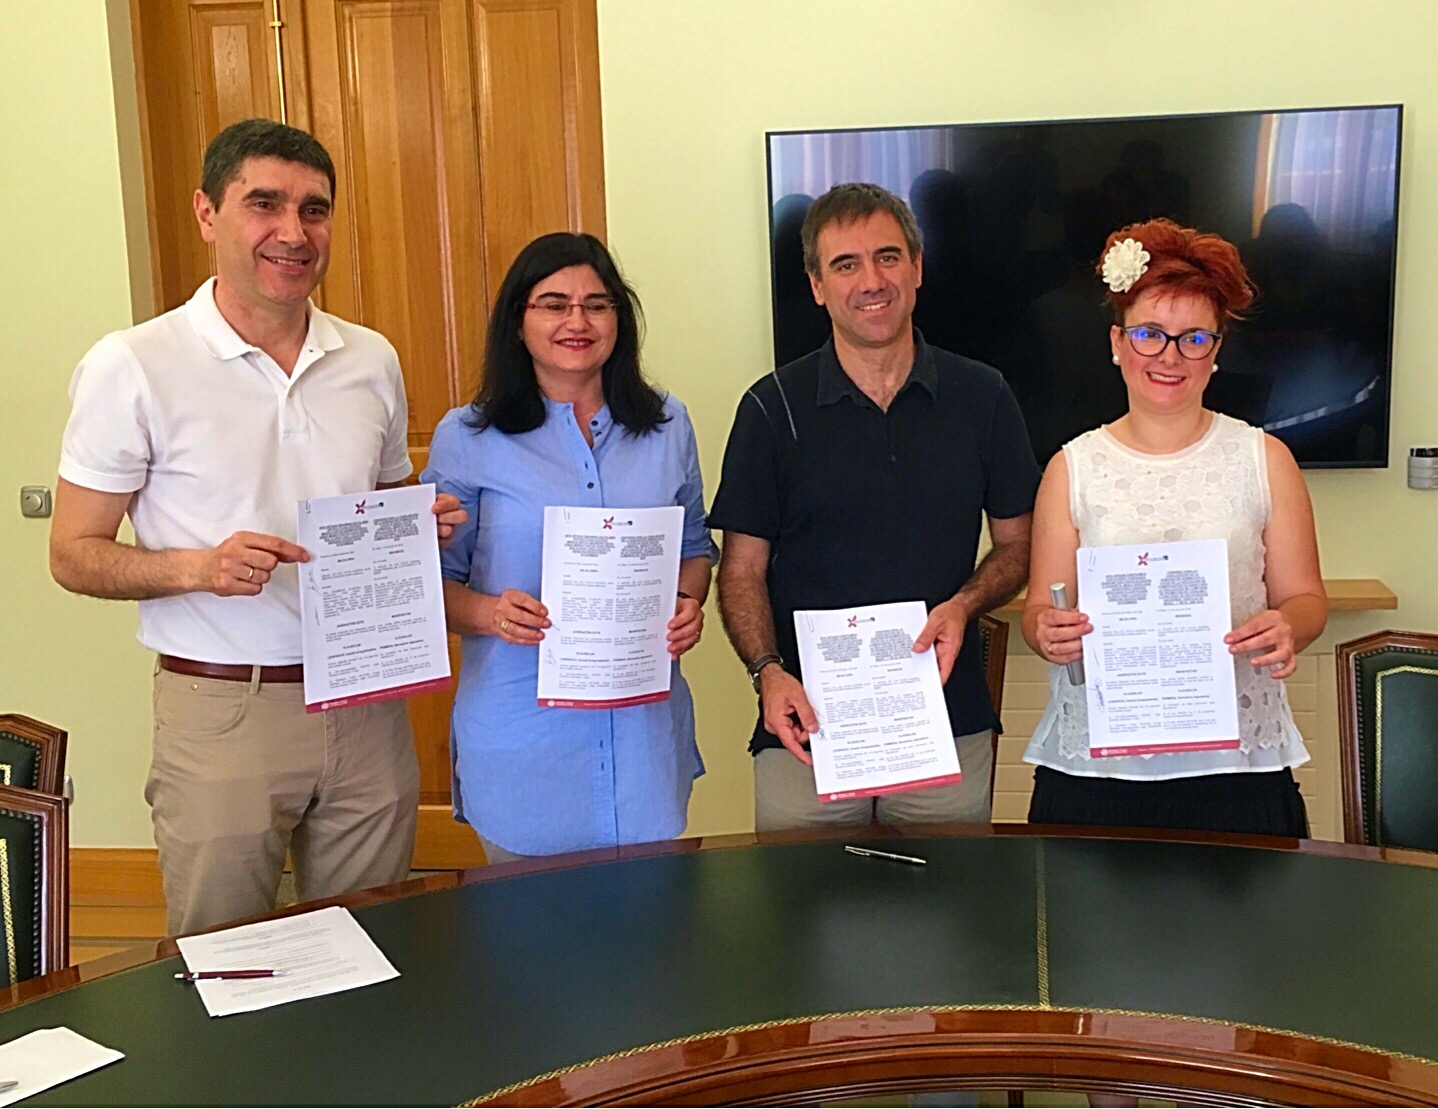 El Ayuntamiento de Eibar renueva el convenio con comerciantes eibarreses/as para la aportación de subvenciones